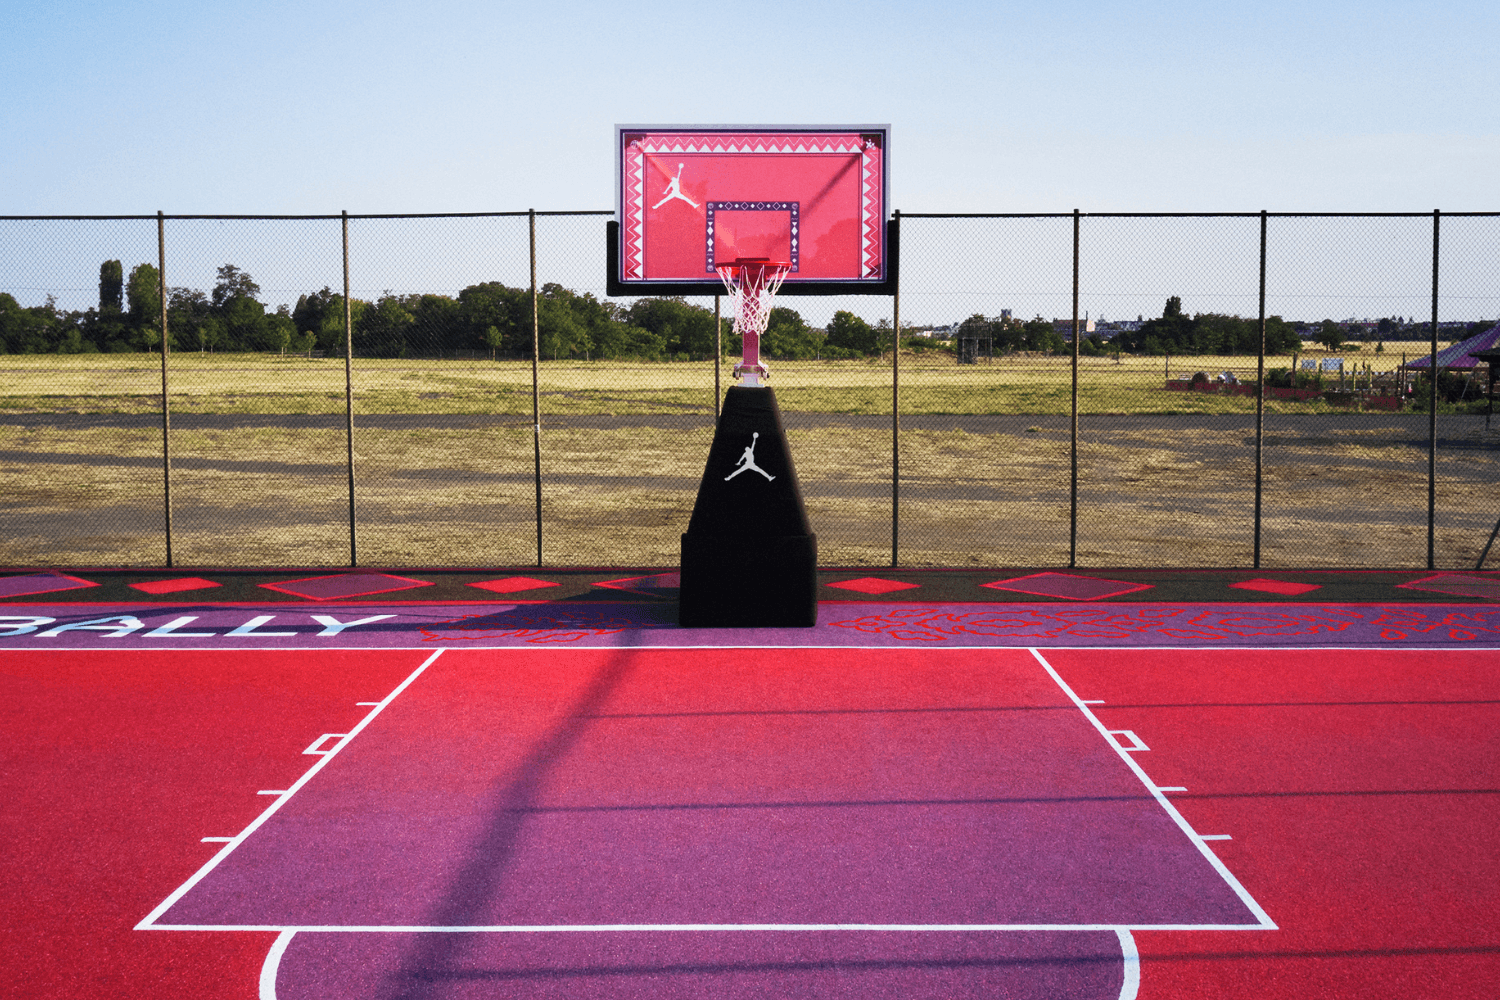 Sabally x Jordan Brand bauen Basketball Court für junge Mädchen